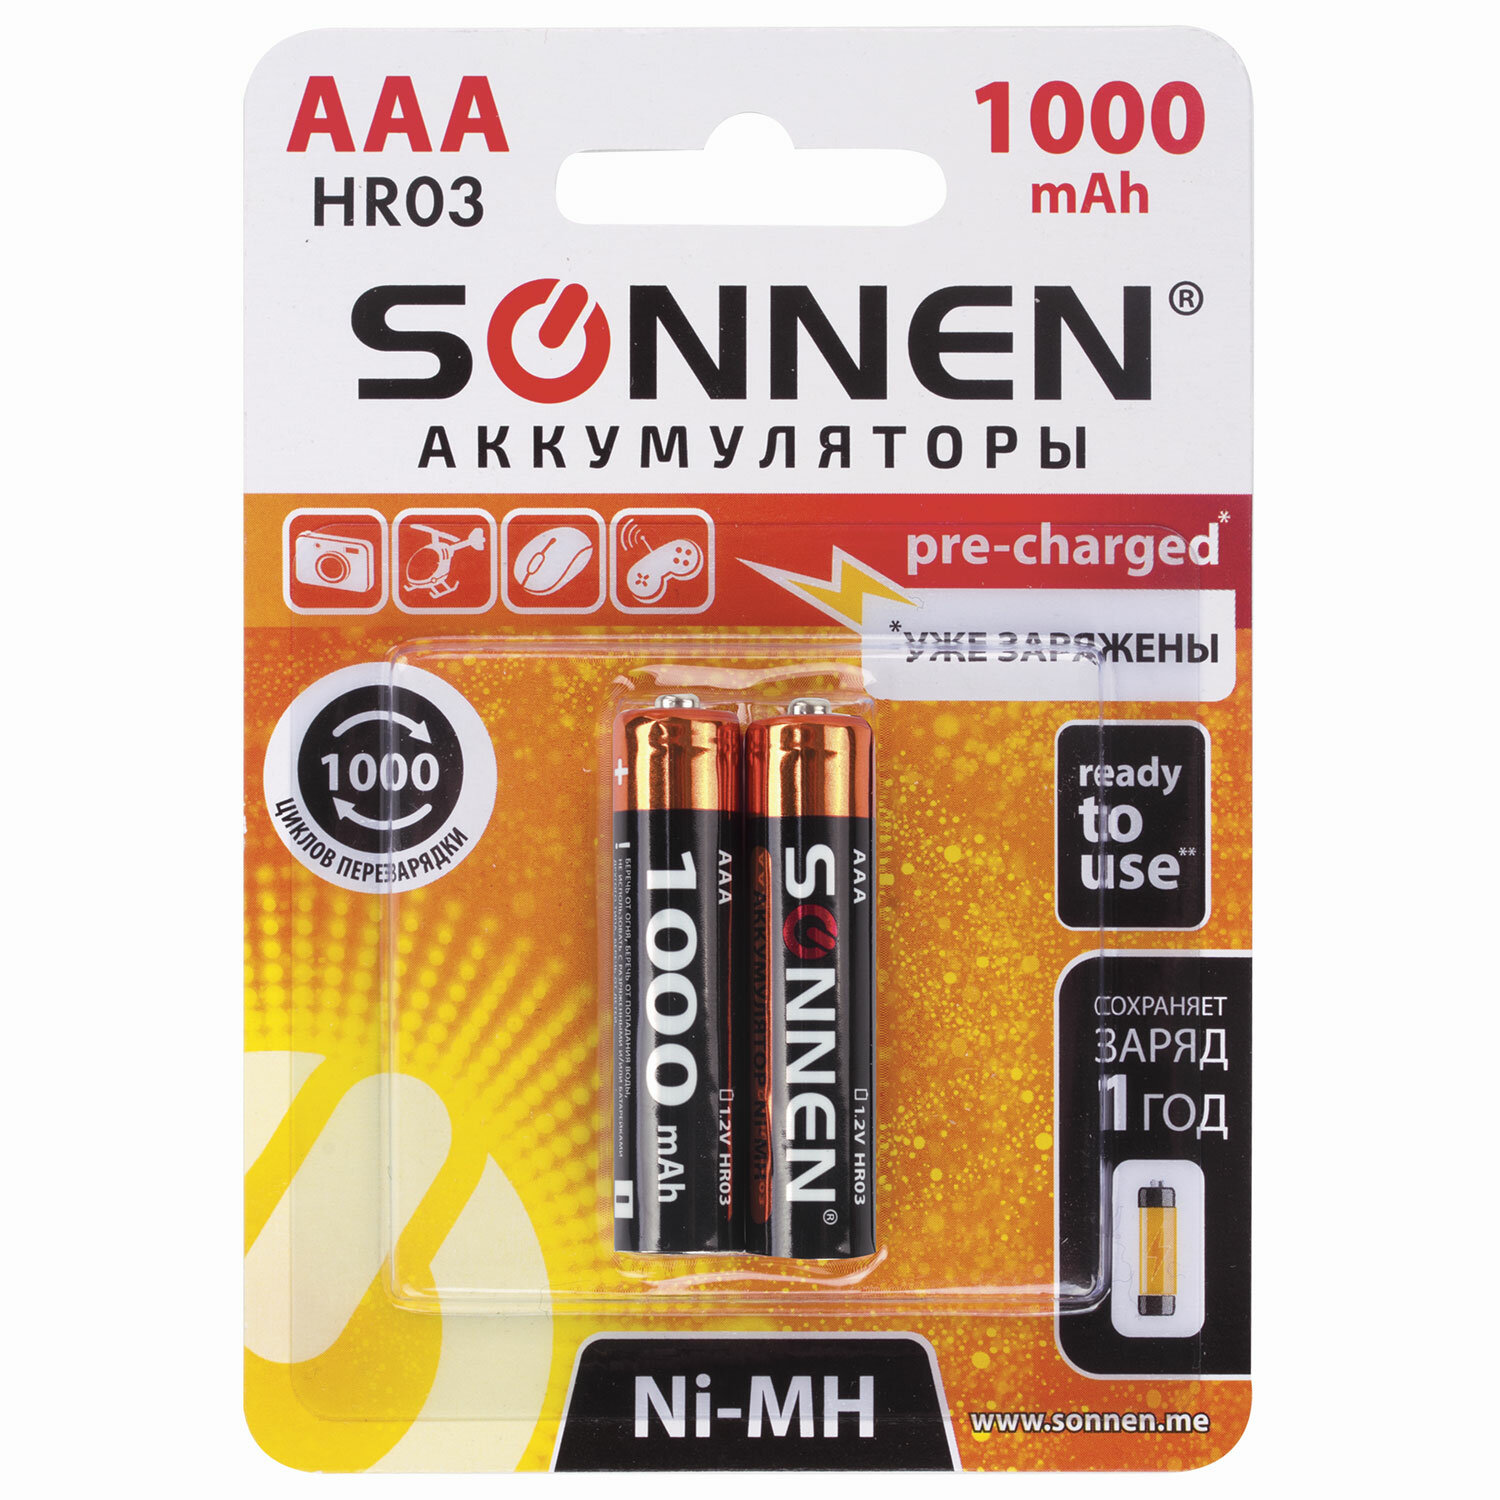 Батарейки аккумуляторные SONNEN, ААА (HR03), Ni-Mh, 1000 mAh, 2 шт., в .